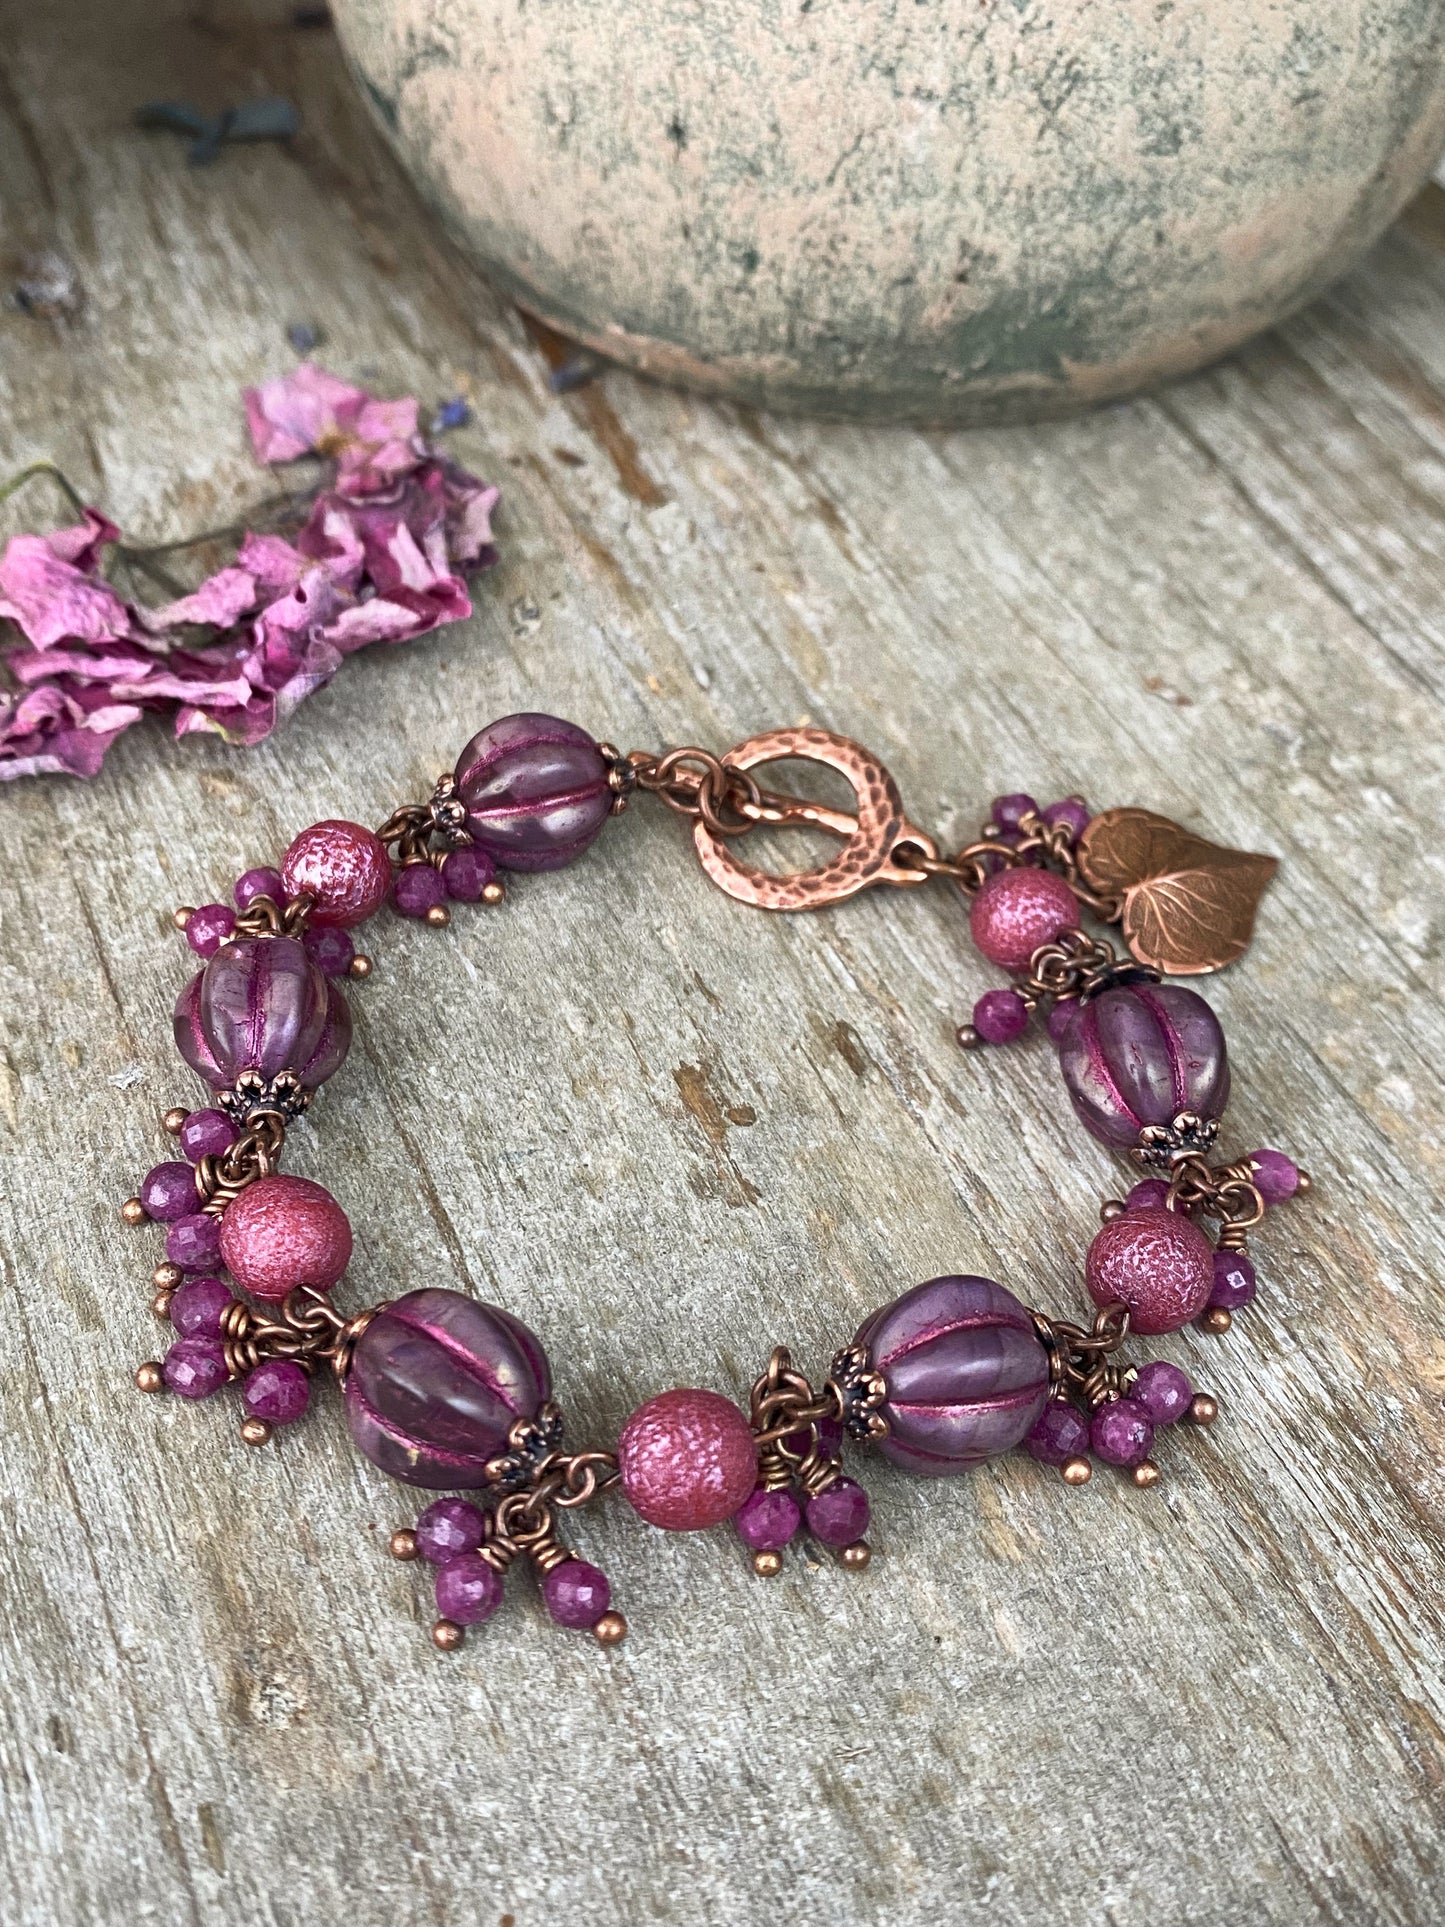 Pink Czech glass, ruby gemstones, copper metal, bracelet.